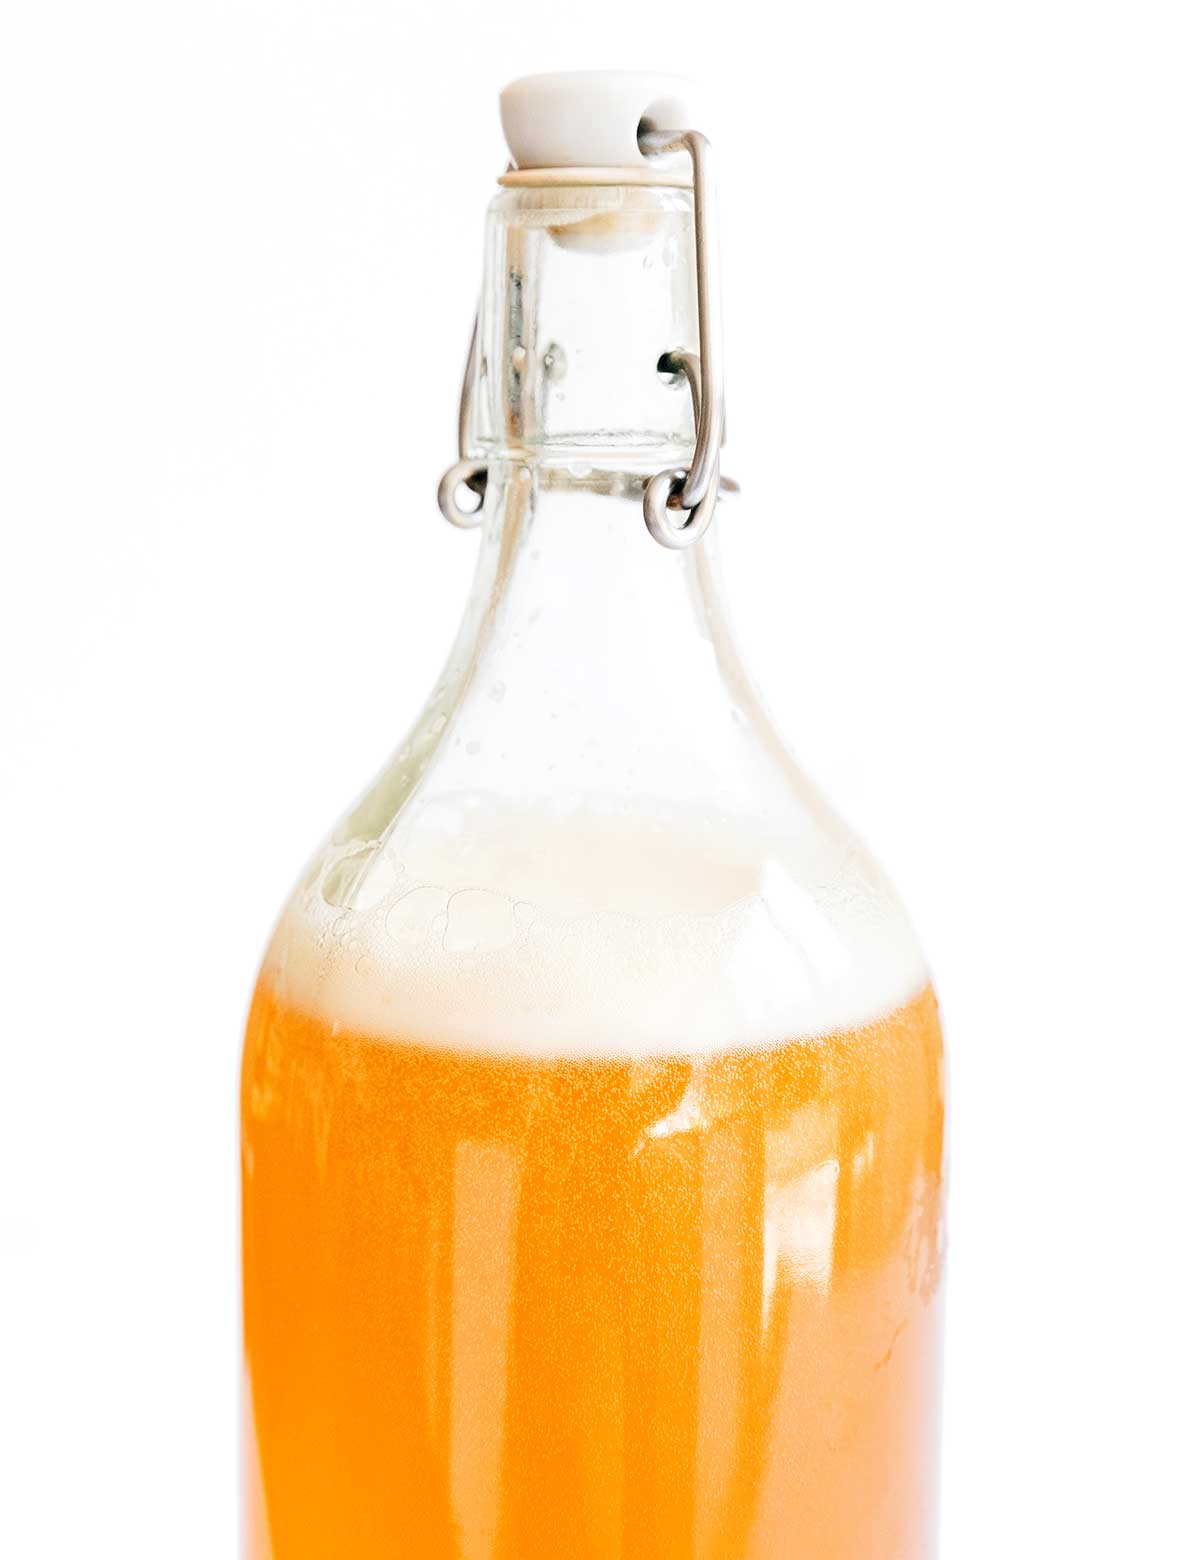 Carbonation bubbles in a second fermentation bottle